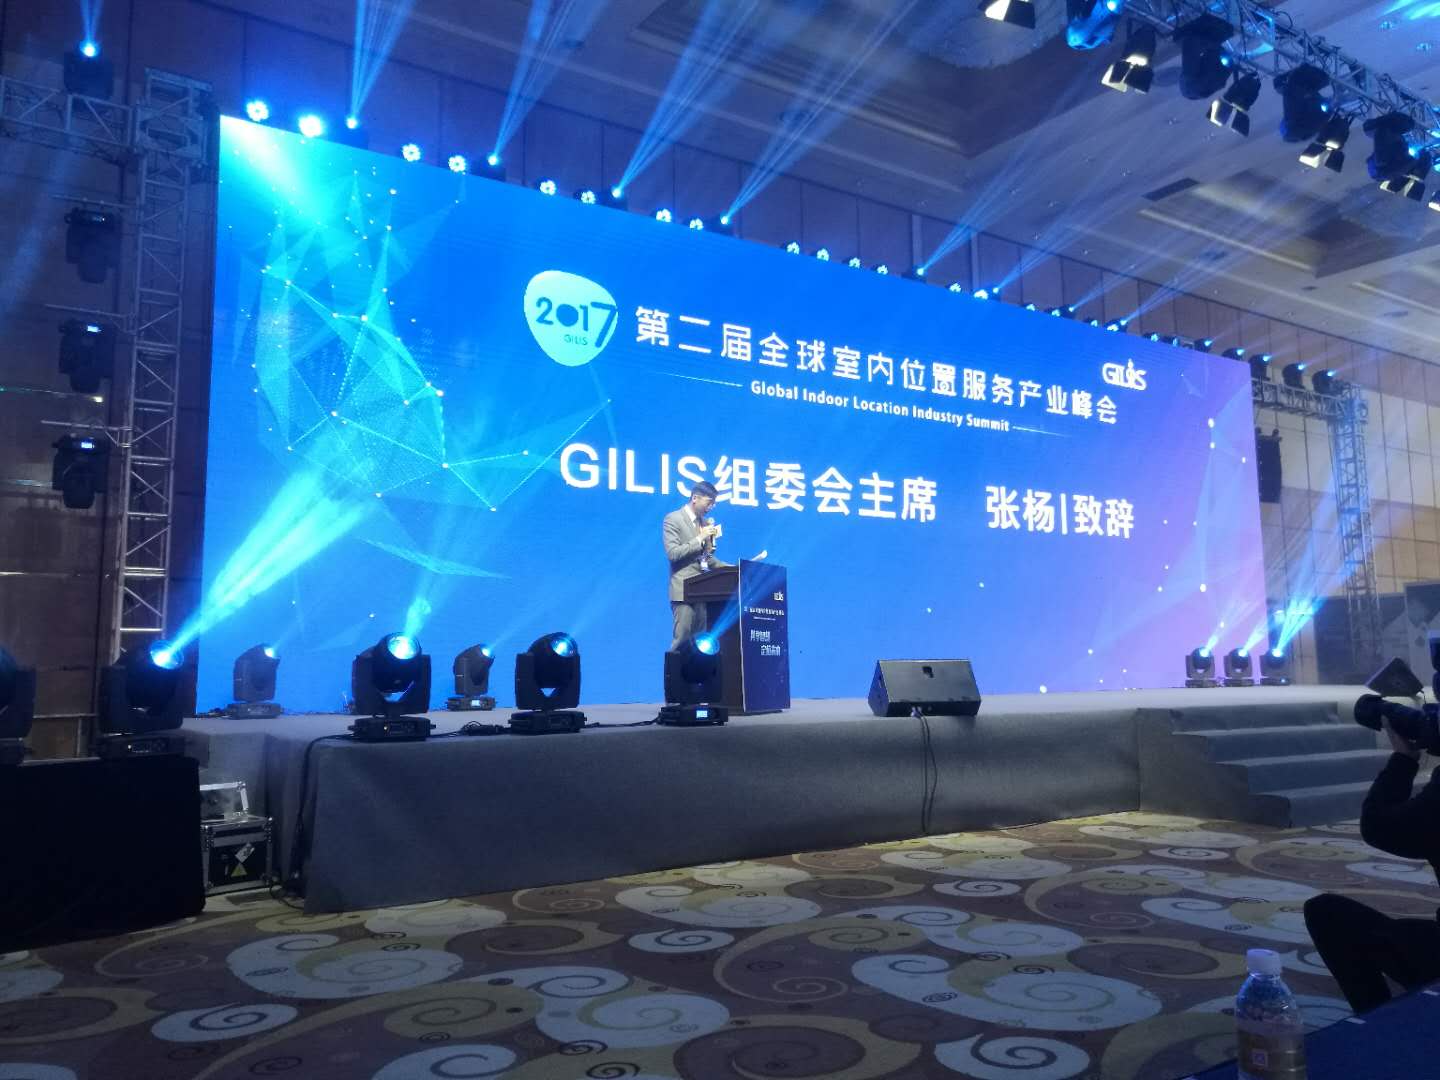 仁微电子应邀出席“第二届全球室内位置服务产业峰会（GILIS 2017）”